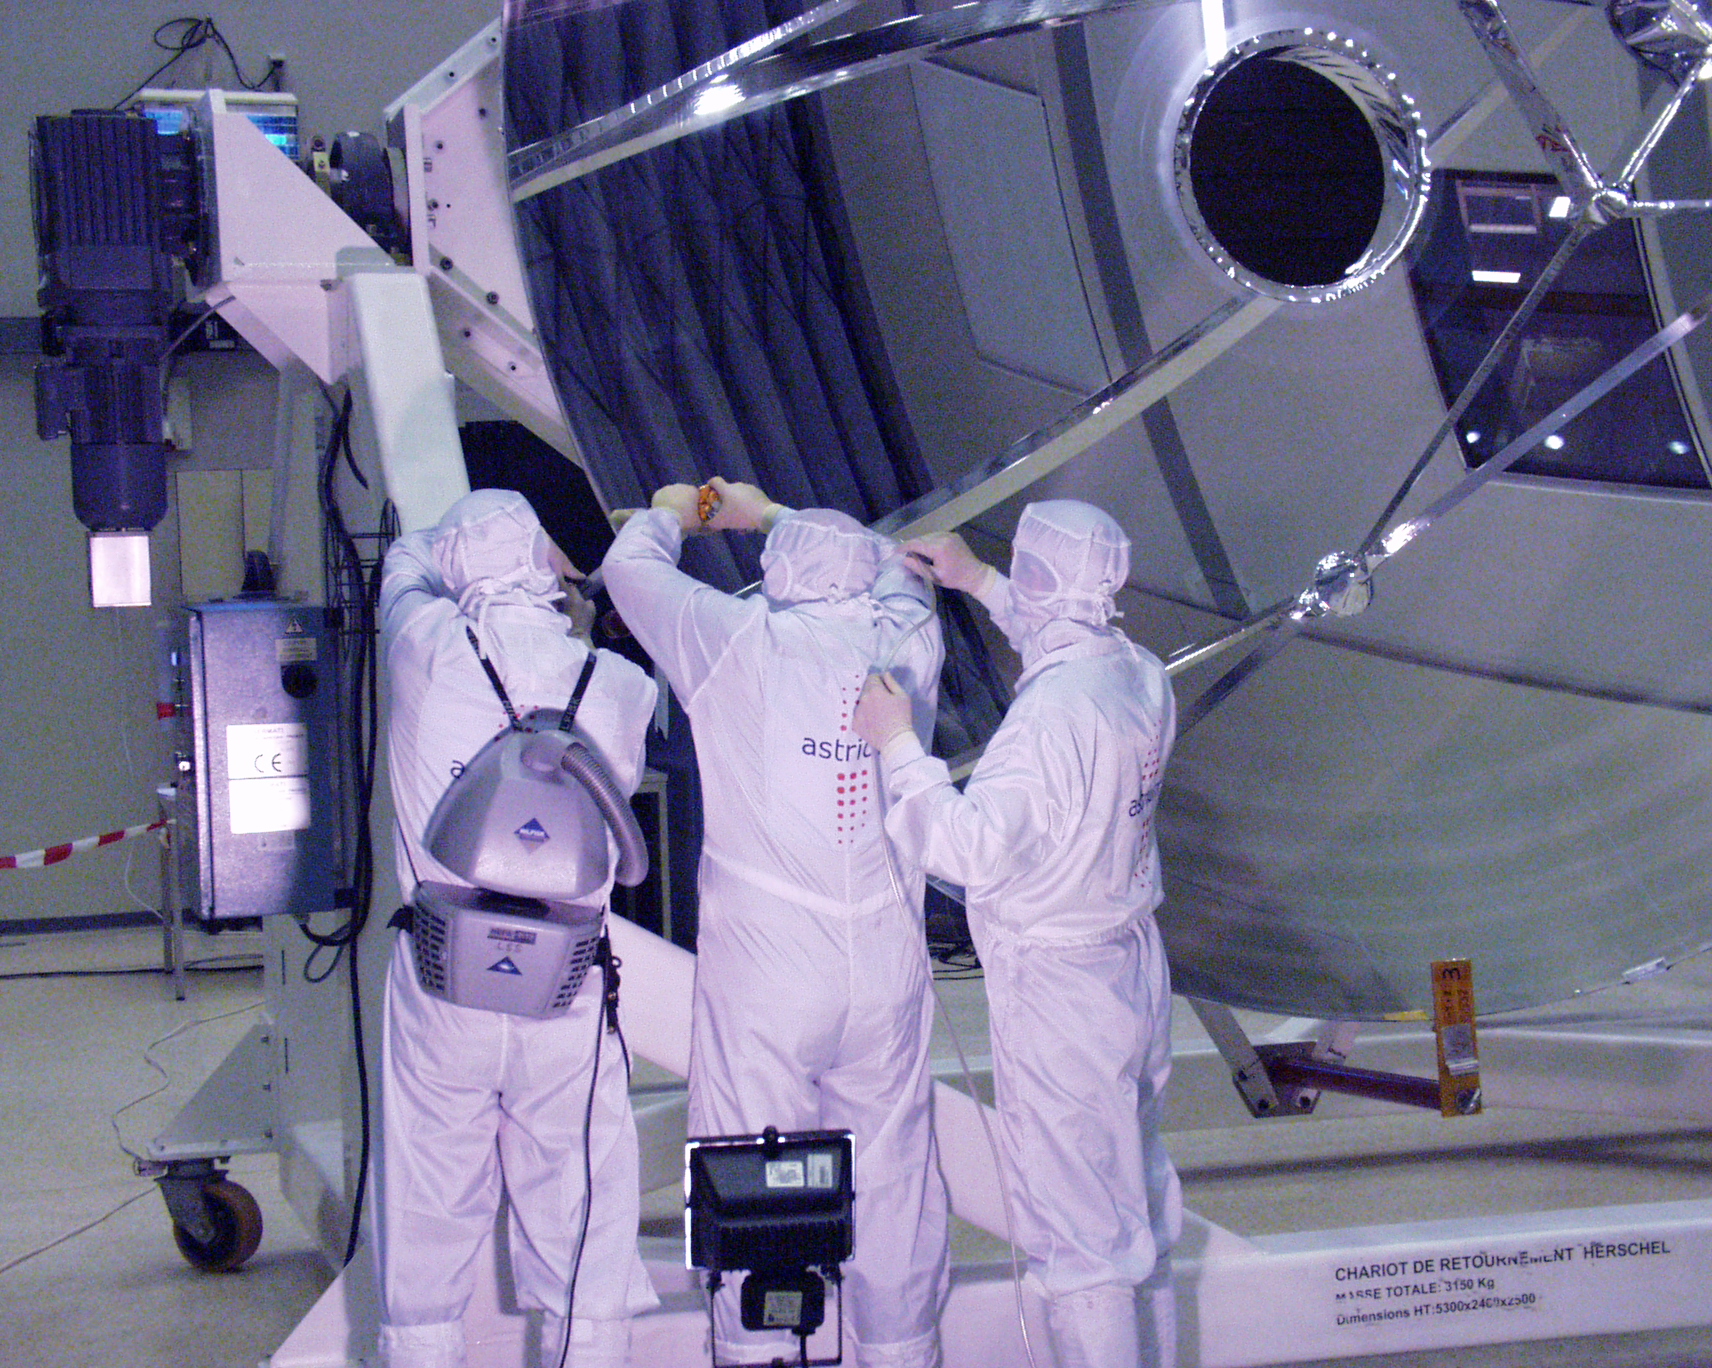 Herschel flight telescope unpacked and inspected